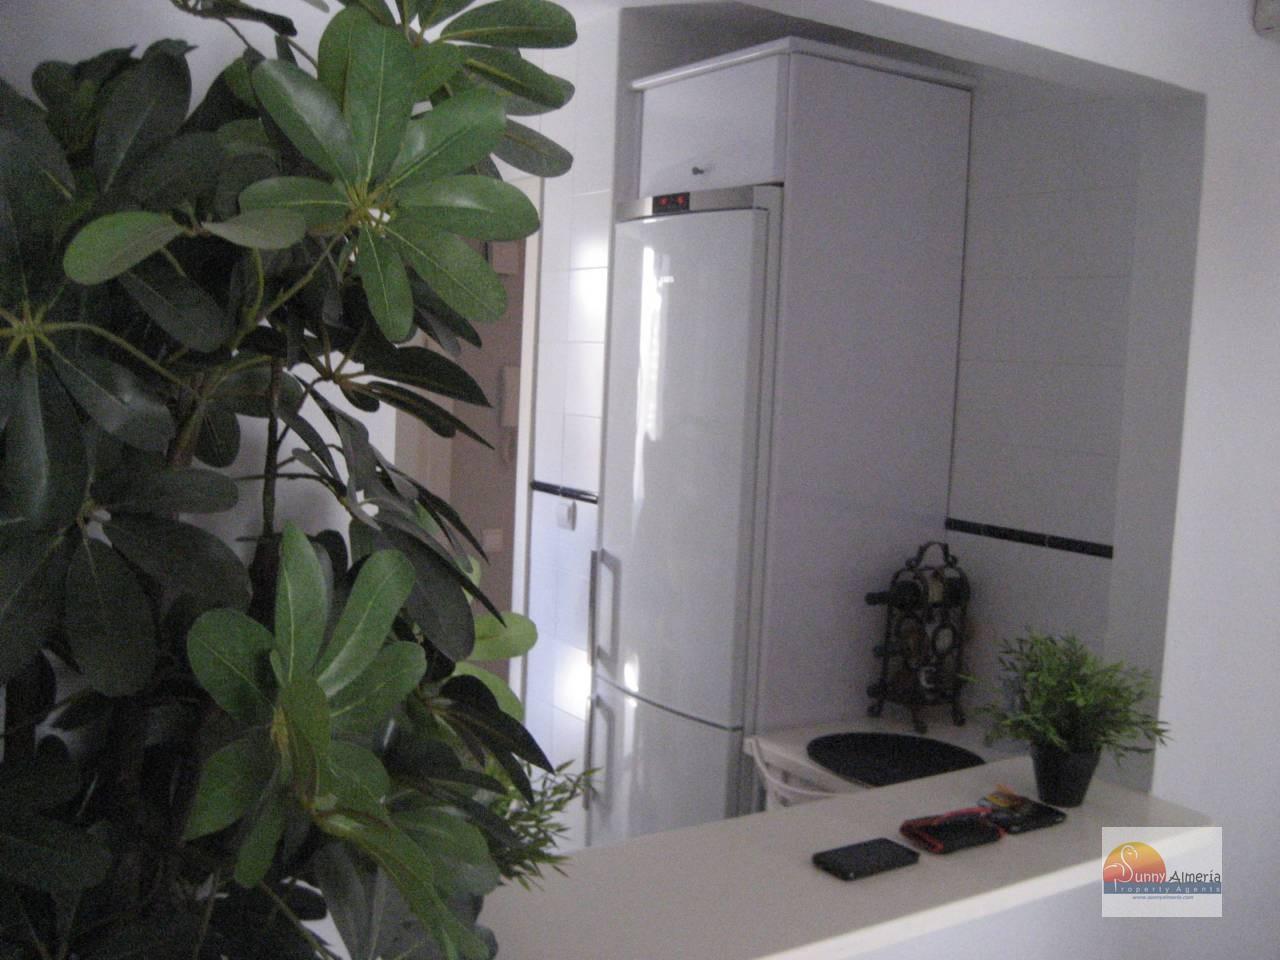 Apartment for rent in av rosita ferrer 4 (Roquetas de Mar), 600 €/month